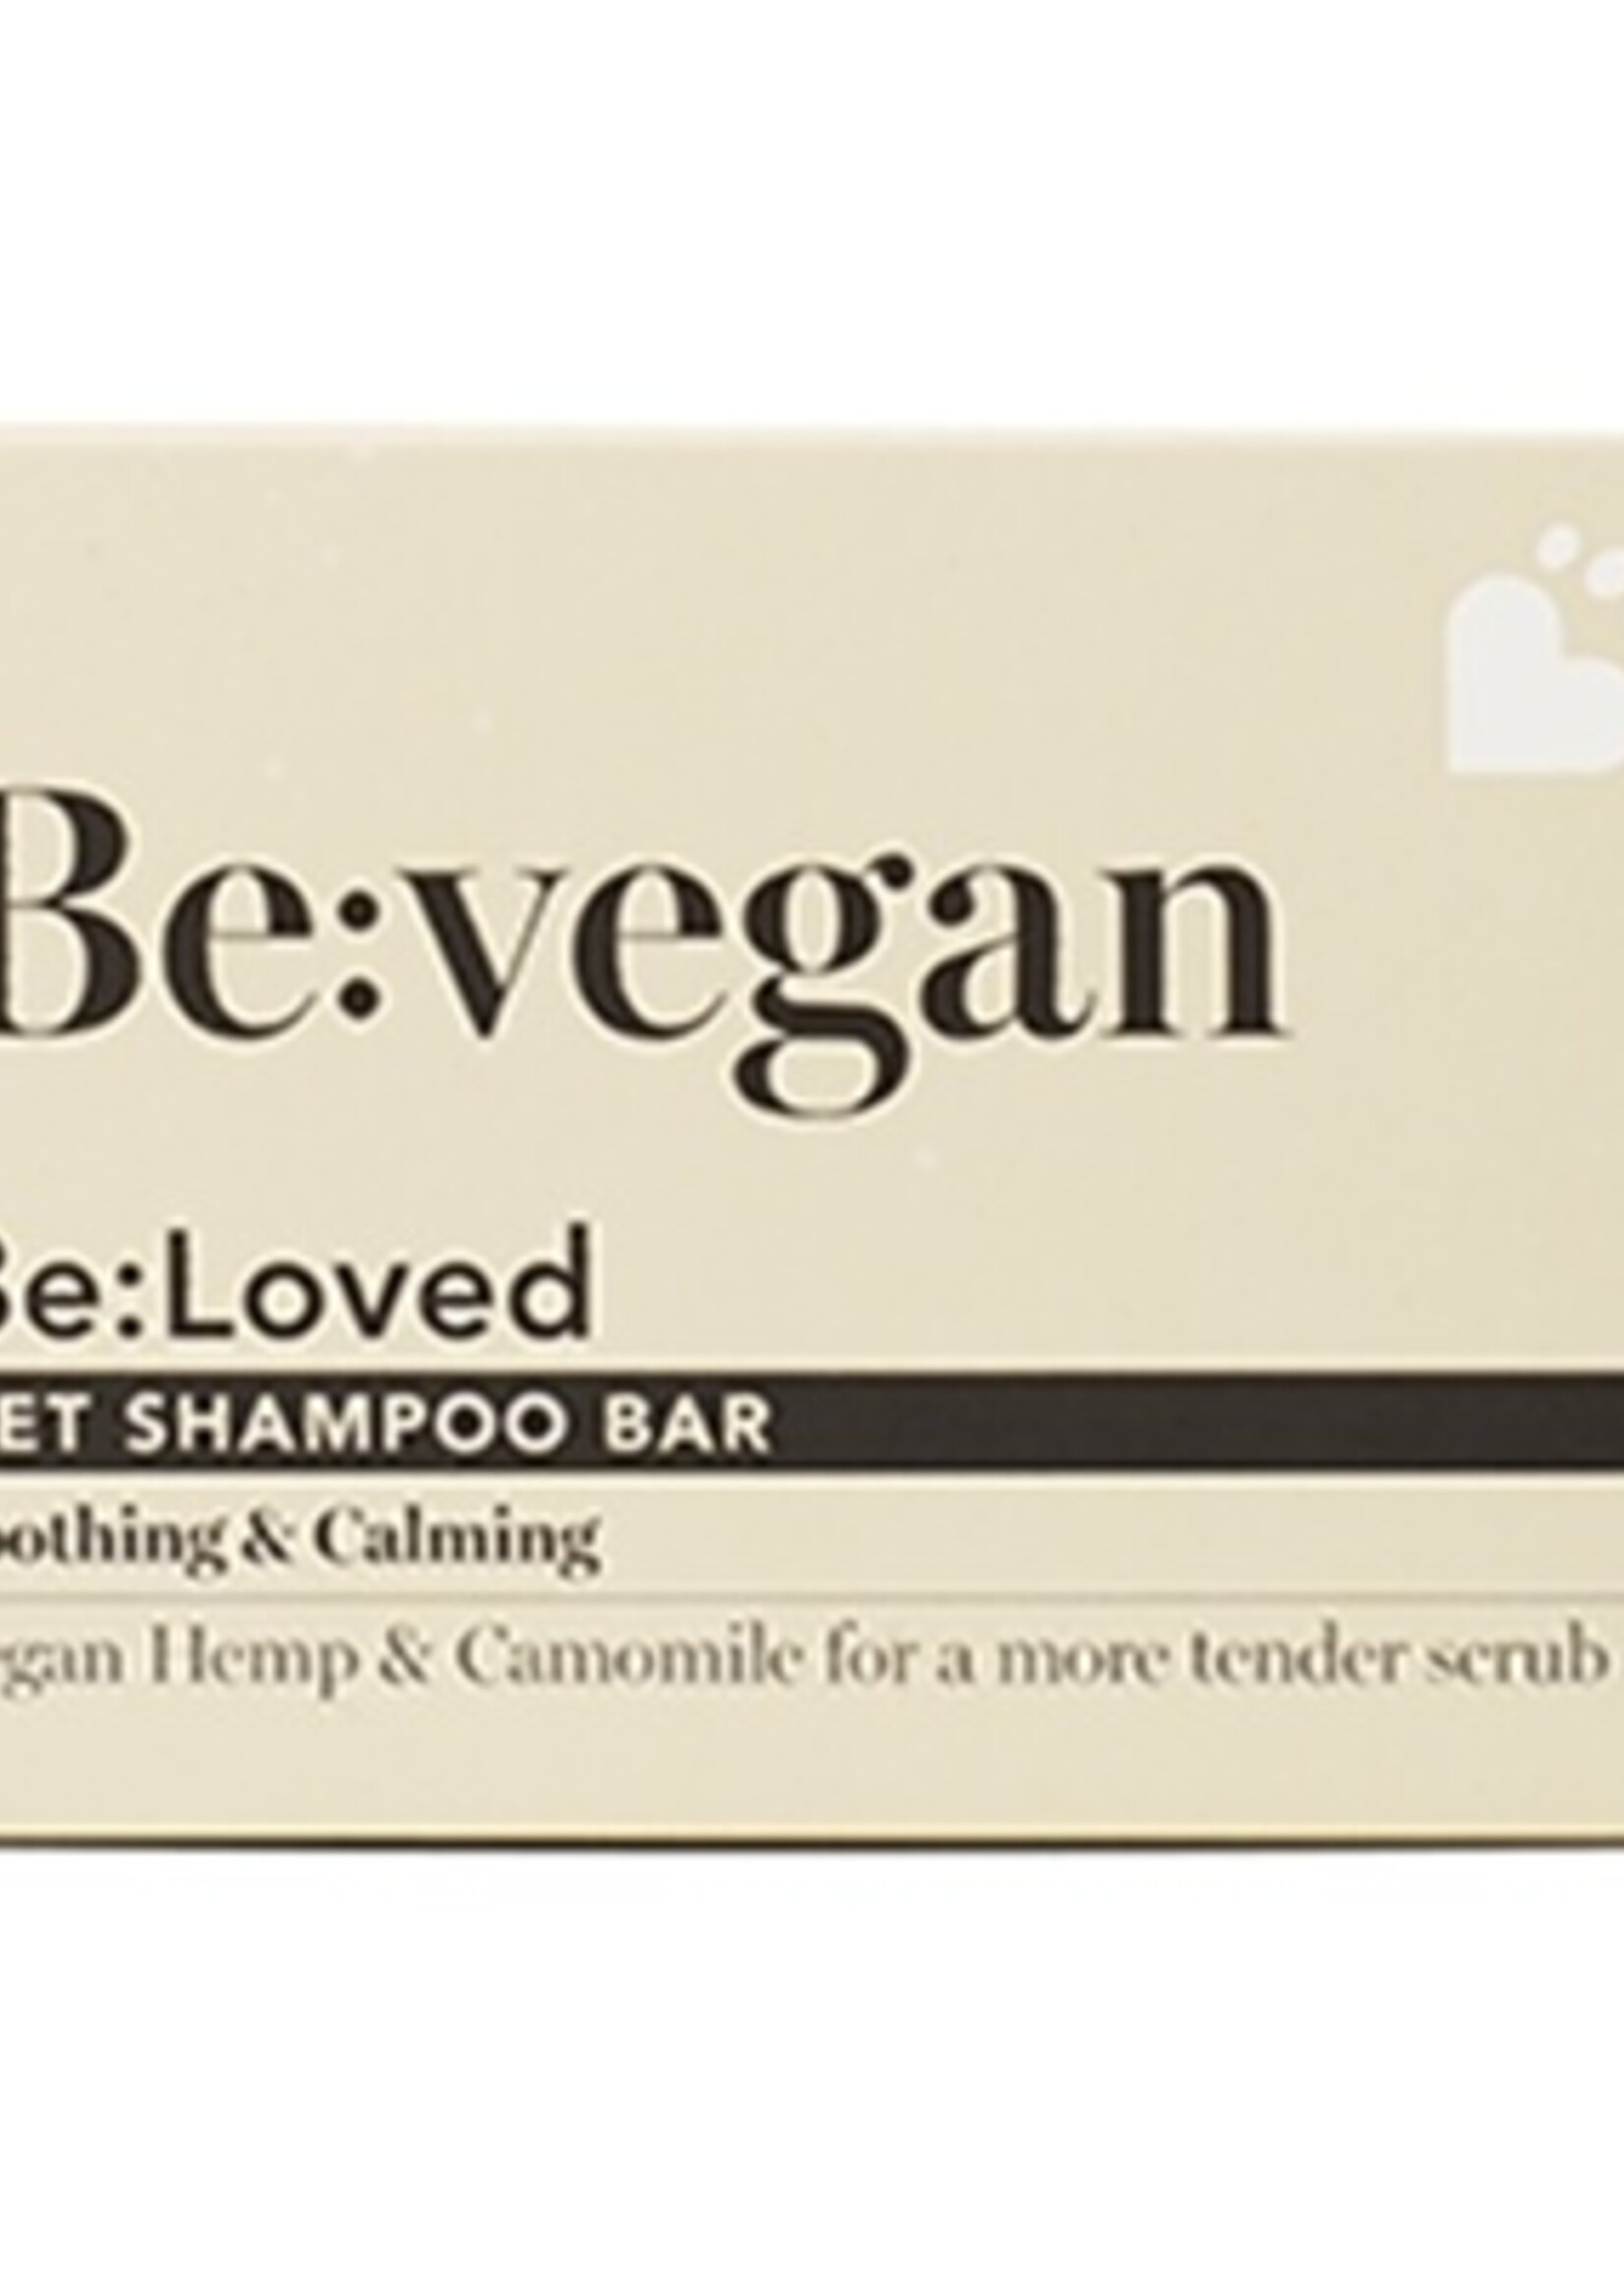 Beloved Beloved vegan pet shampoo bar